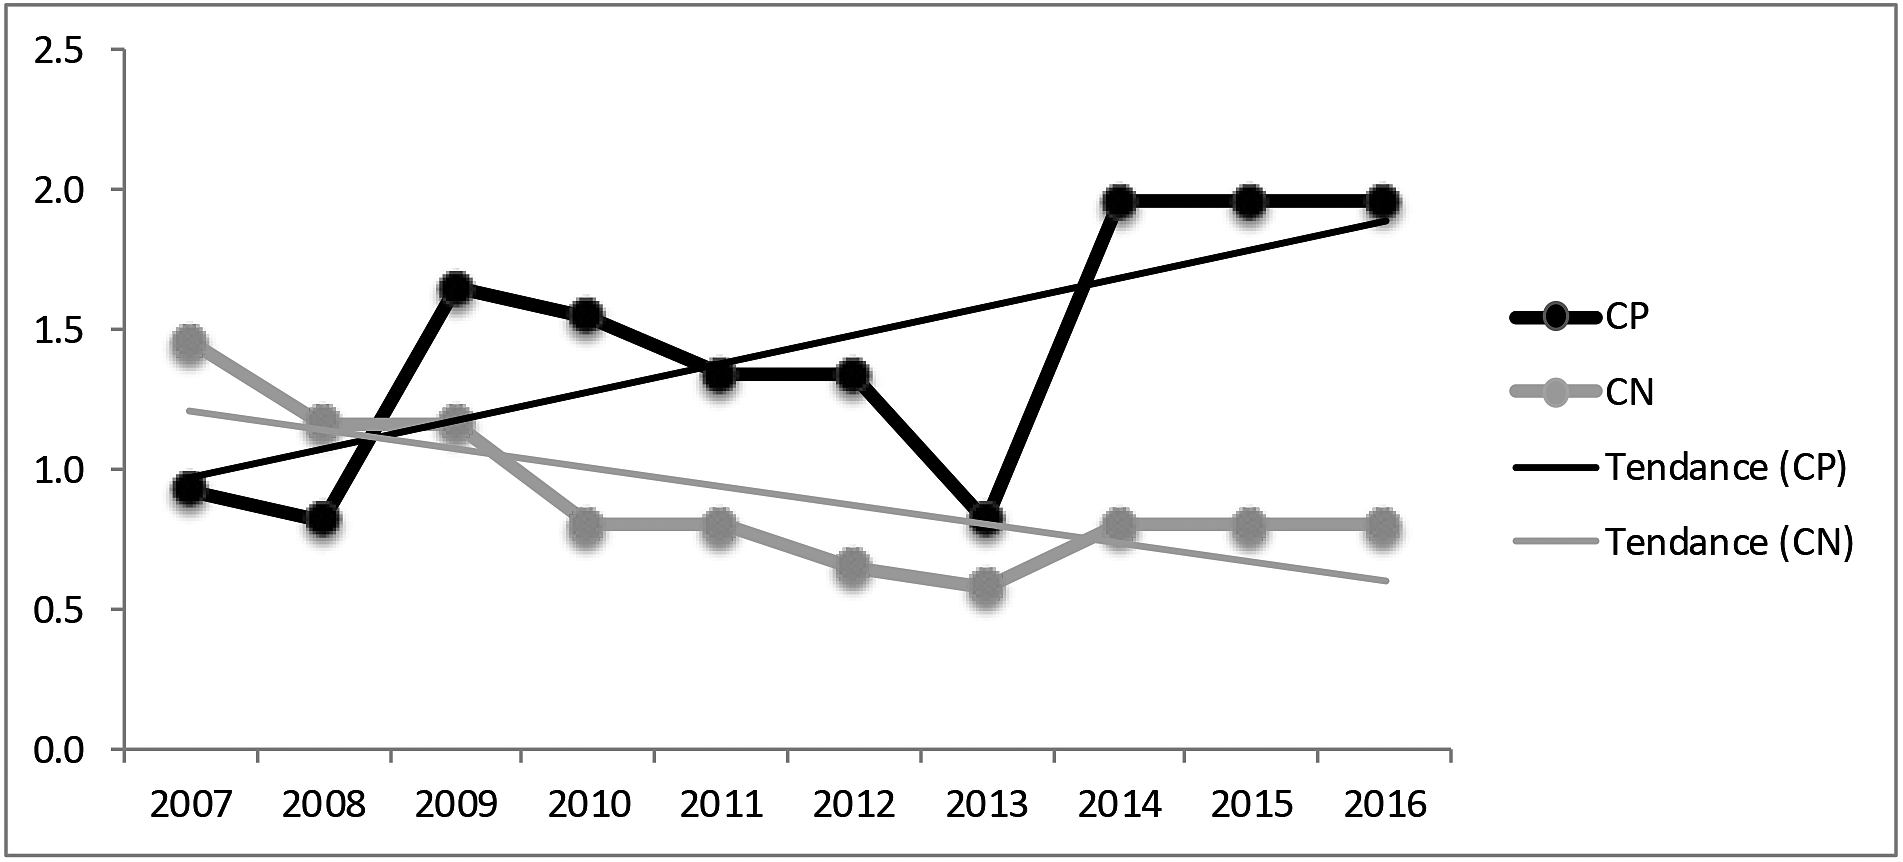 Figure 7. Nombre d'événements par 1000 milles de voie principale par année où des véhicules d'entretien du CP  et du CN  ont dépassé leurs limites d'autorisation, de 2007 à 2016 